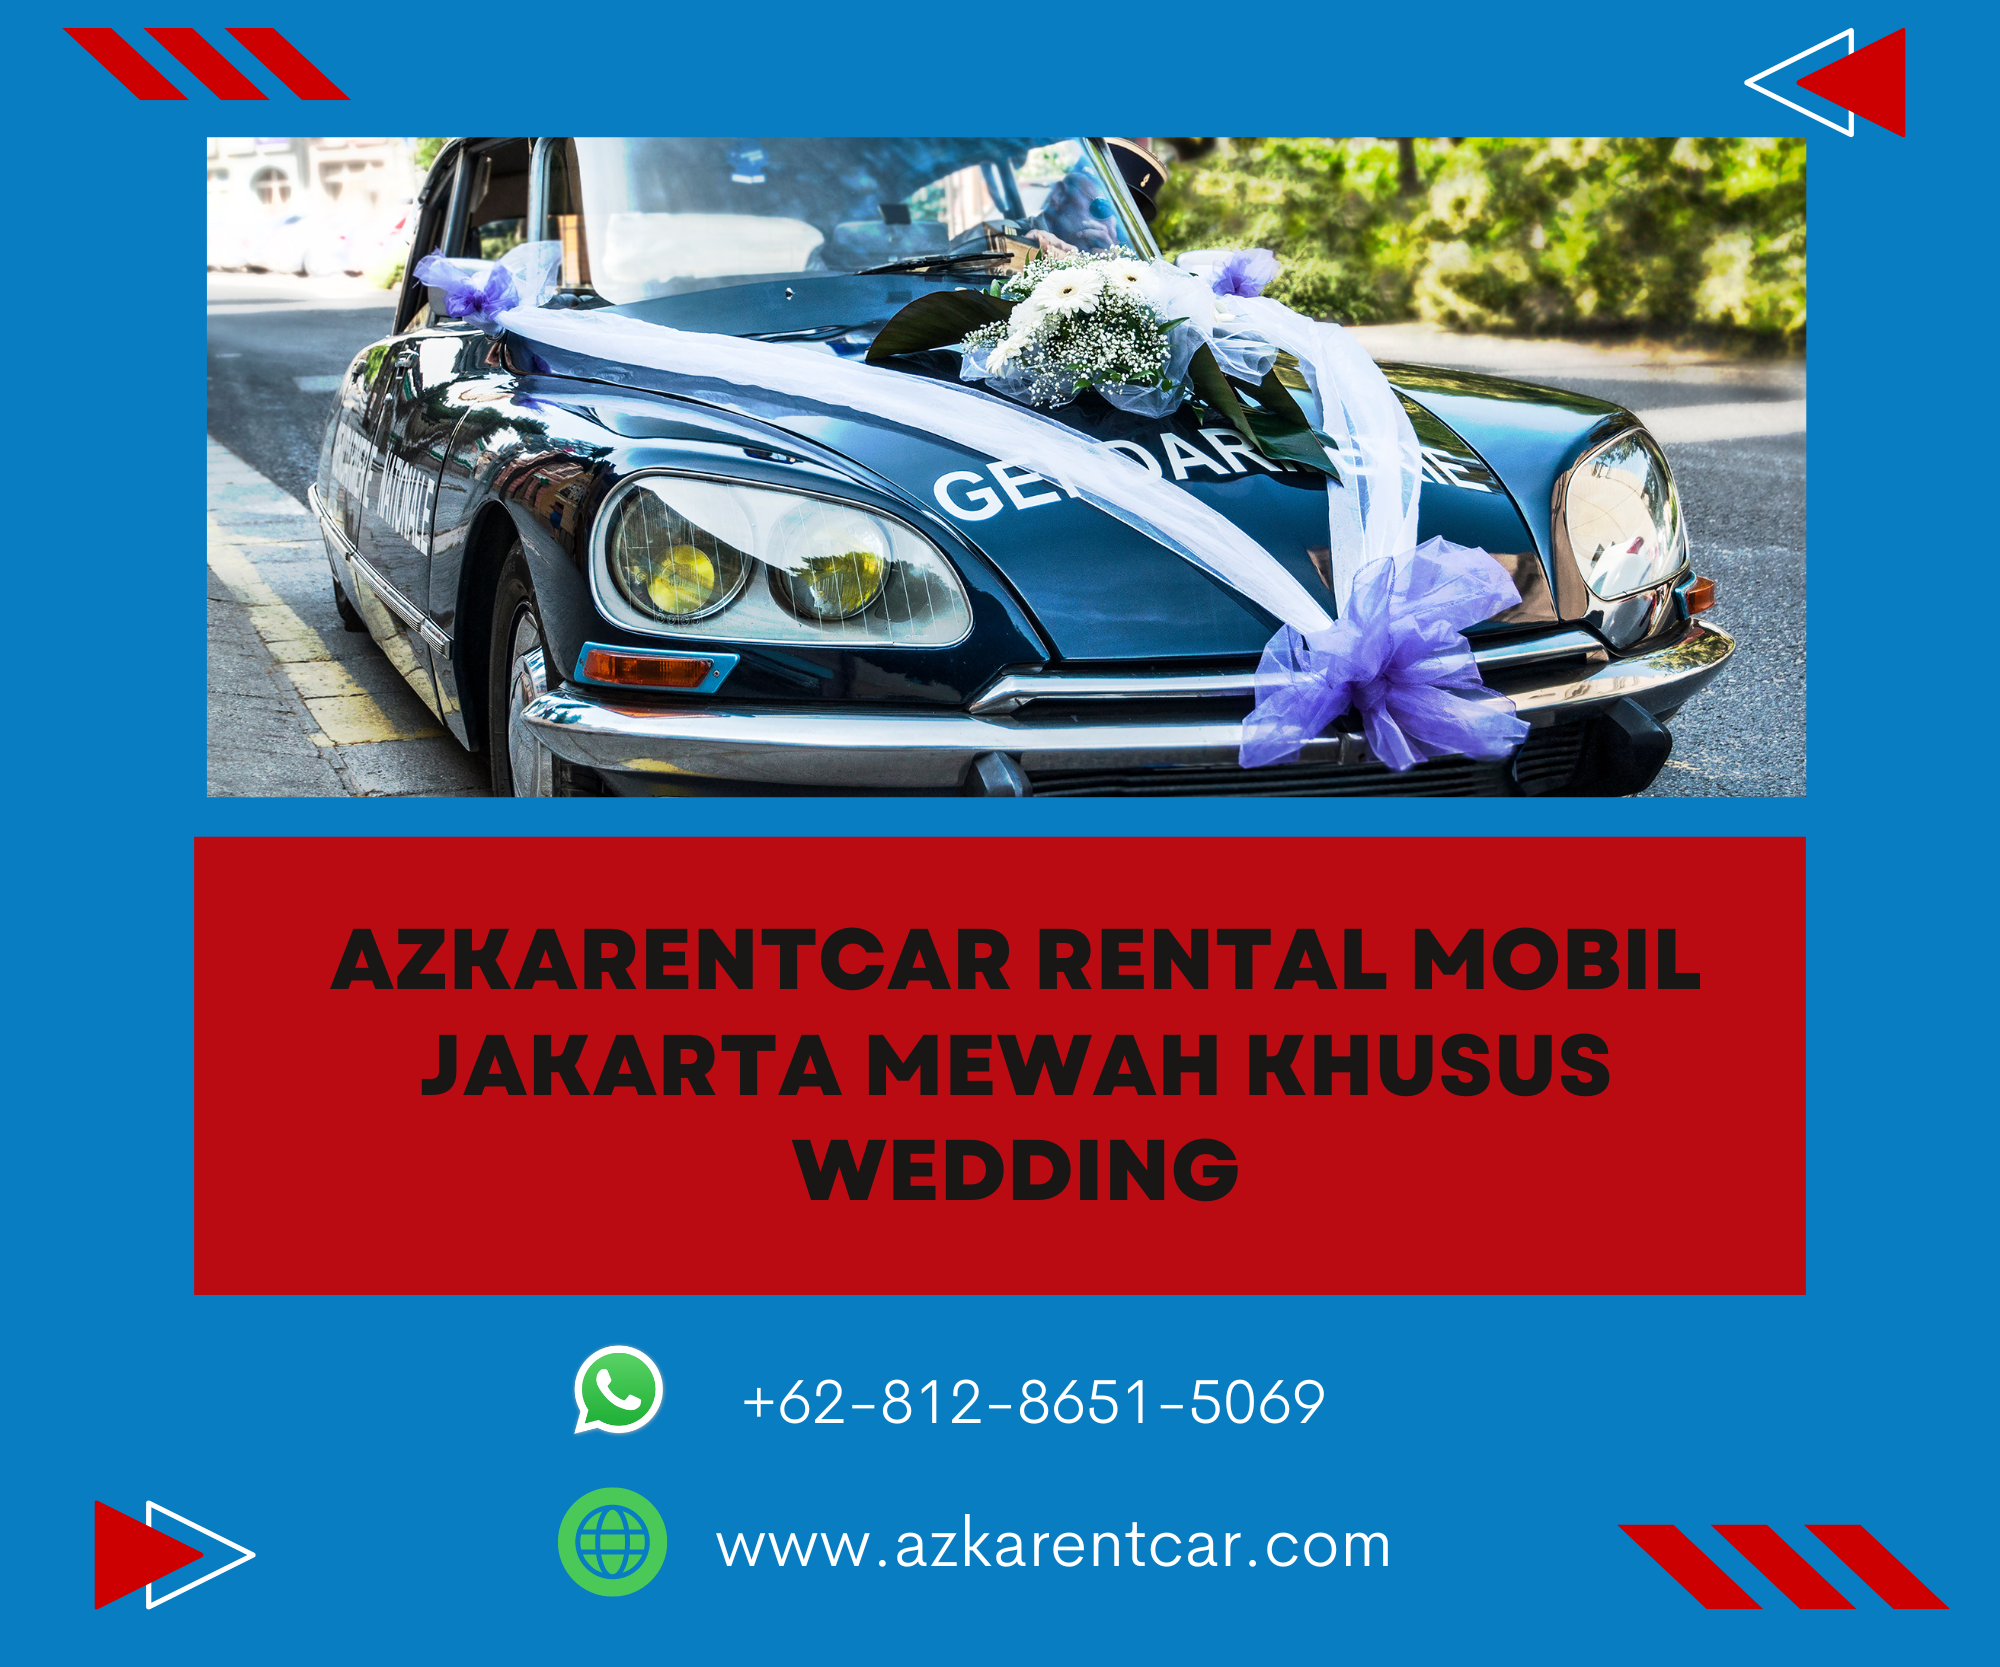 Azkarentcar Rental Mobil Jakarta Mewah Khusus Wedding